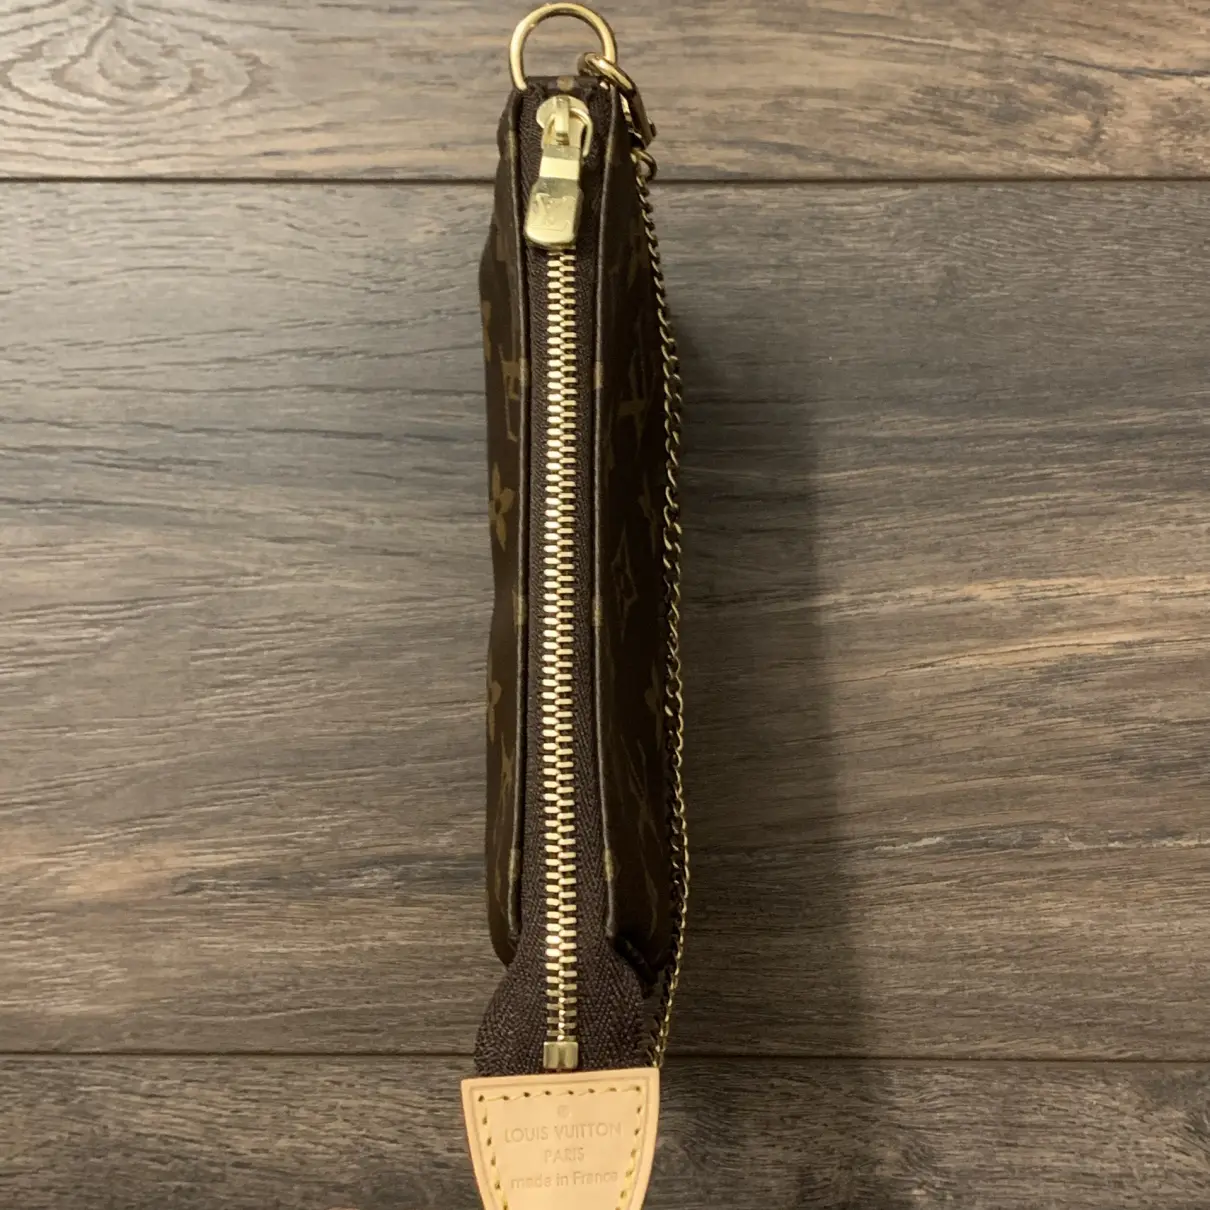 Pochette Accessoire handbag Louis Vuitton